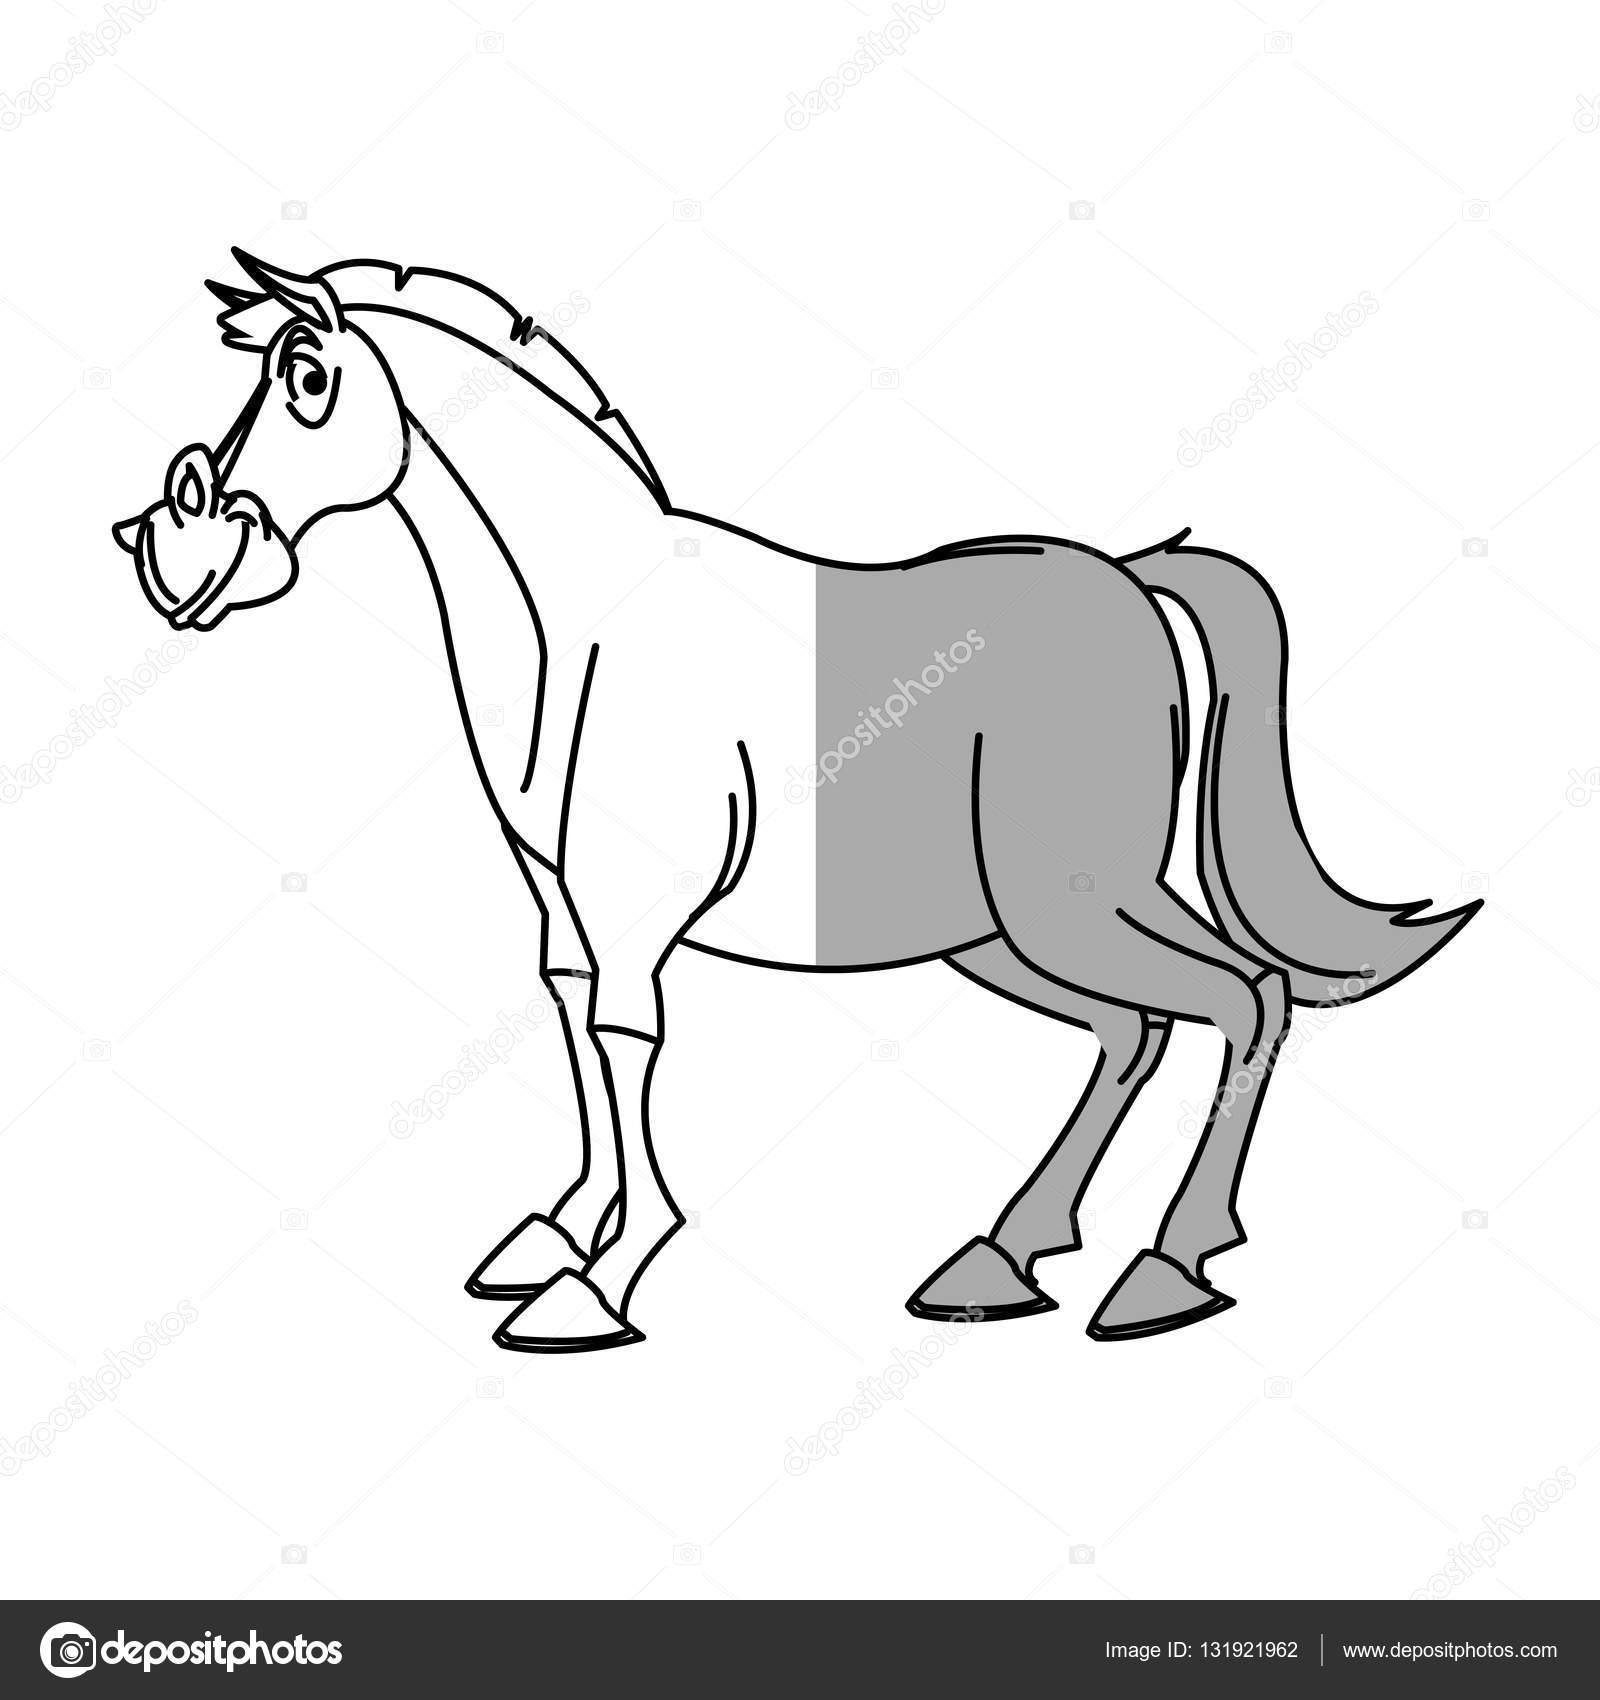 Cavalo de cowboy de desenhos animados - isolado - ilustração para crianças  Ilustração por ©illustrator_hft #135991014